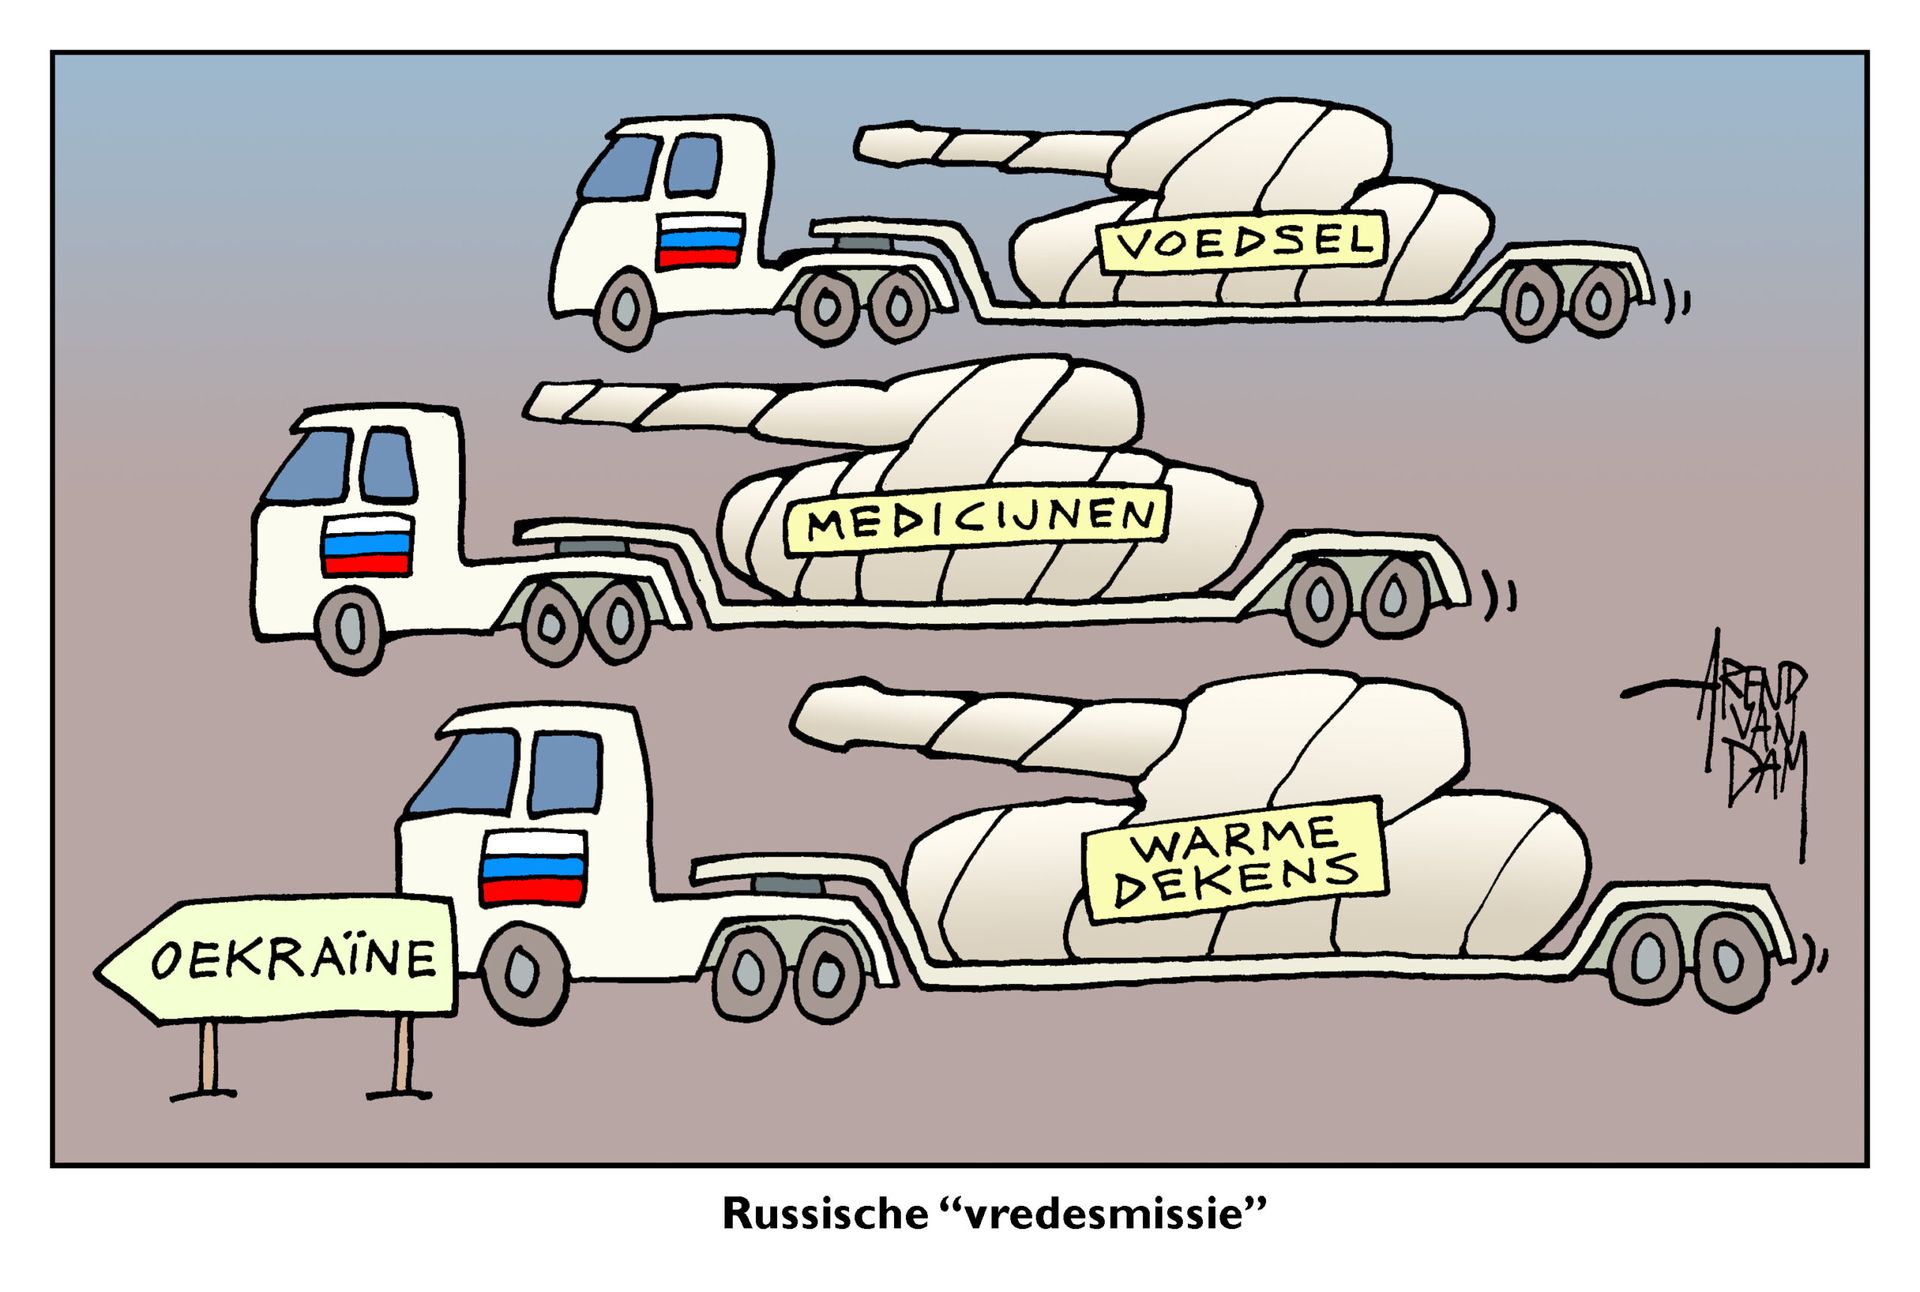 RussischeVredesmissie